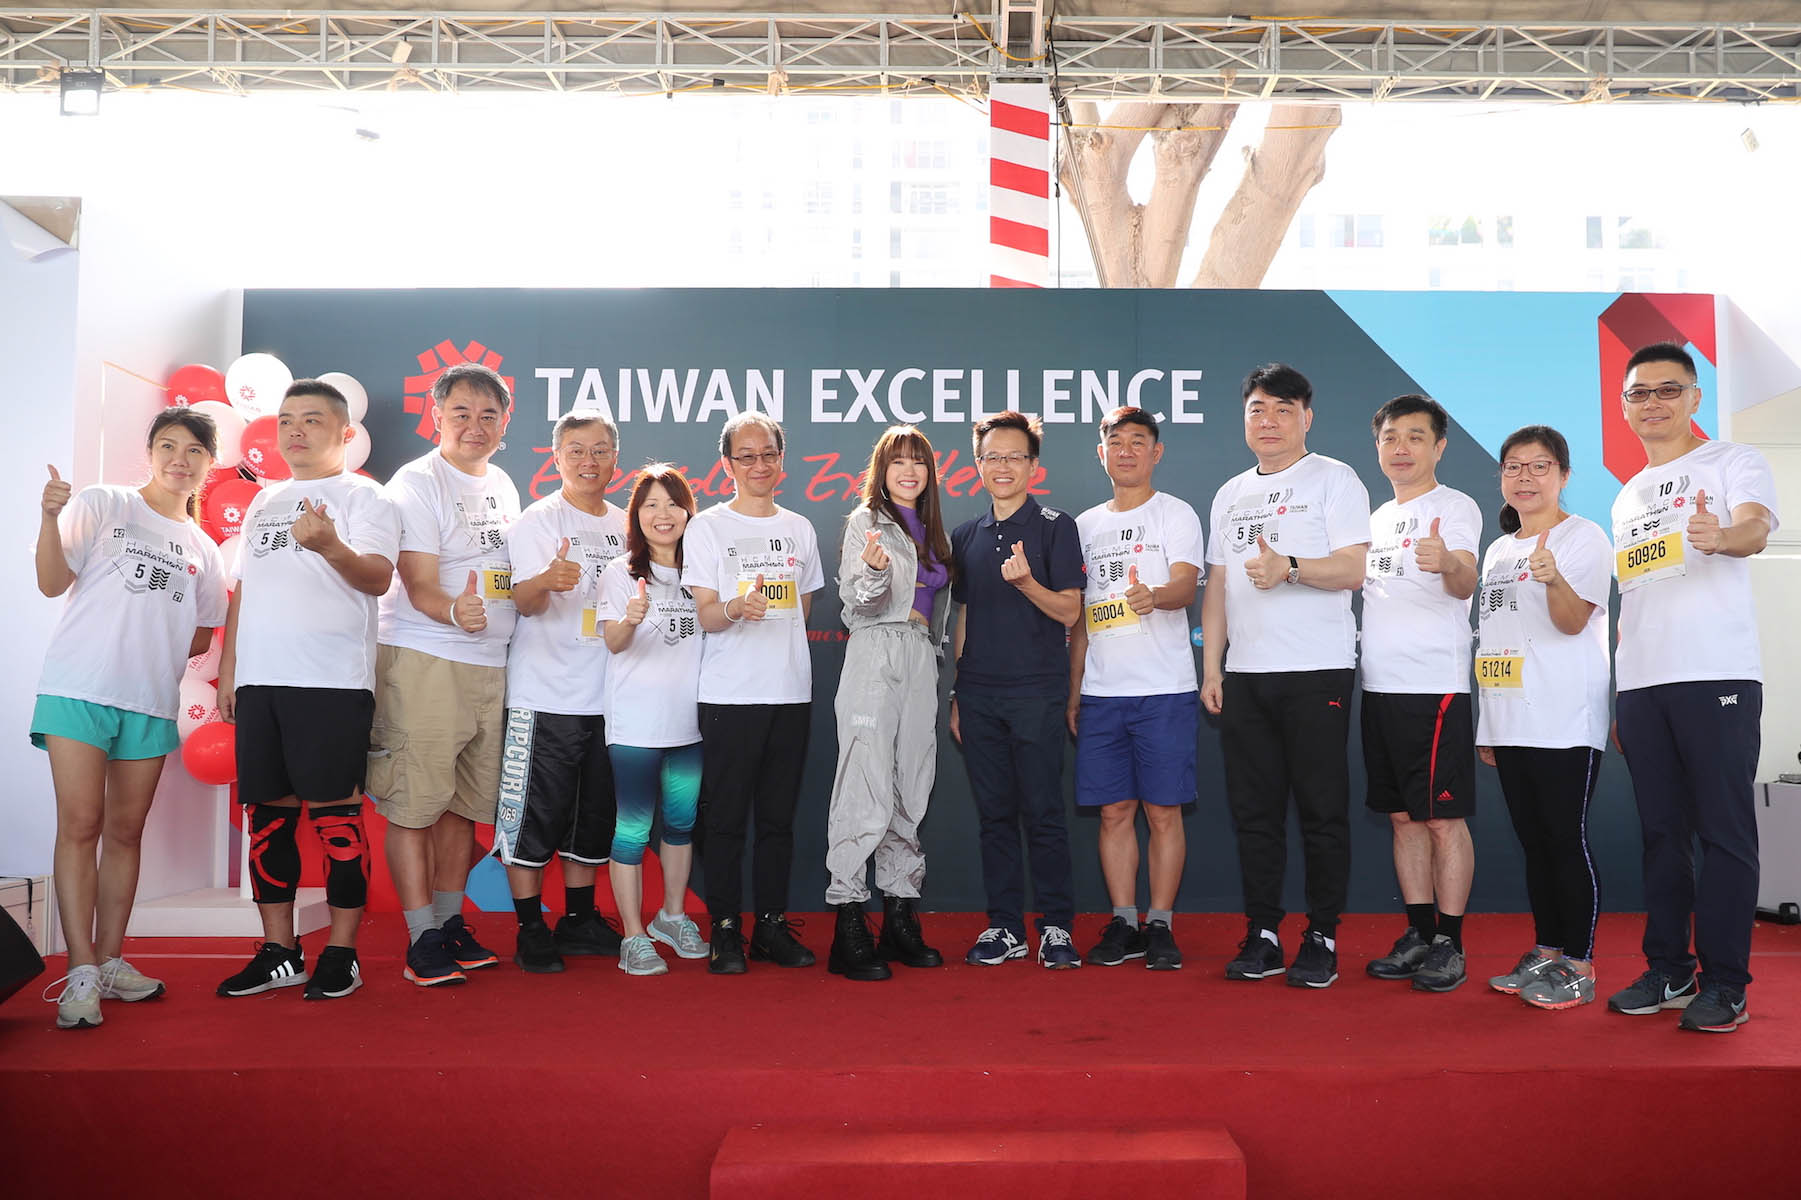 Taiwan Excellence đồng hành cùng HCMC MARATHON 2020 lan toả những giá trị ý nghĩa đến cộng đồng